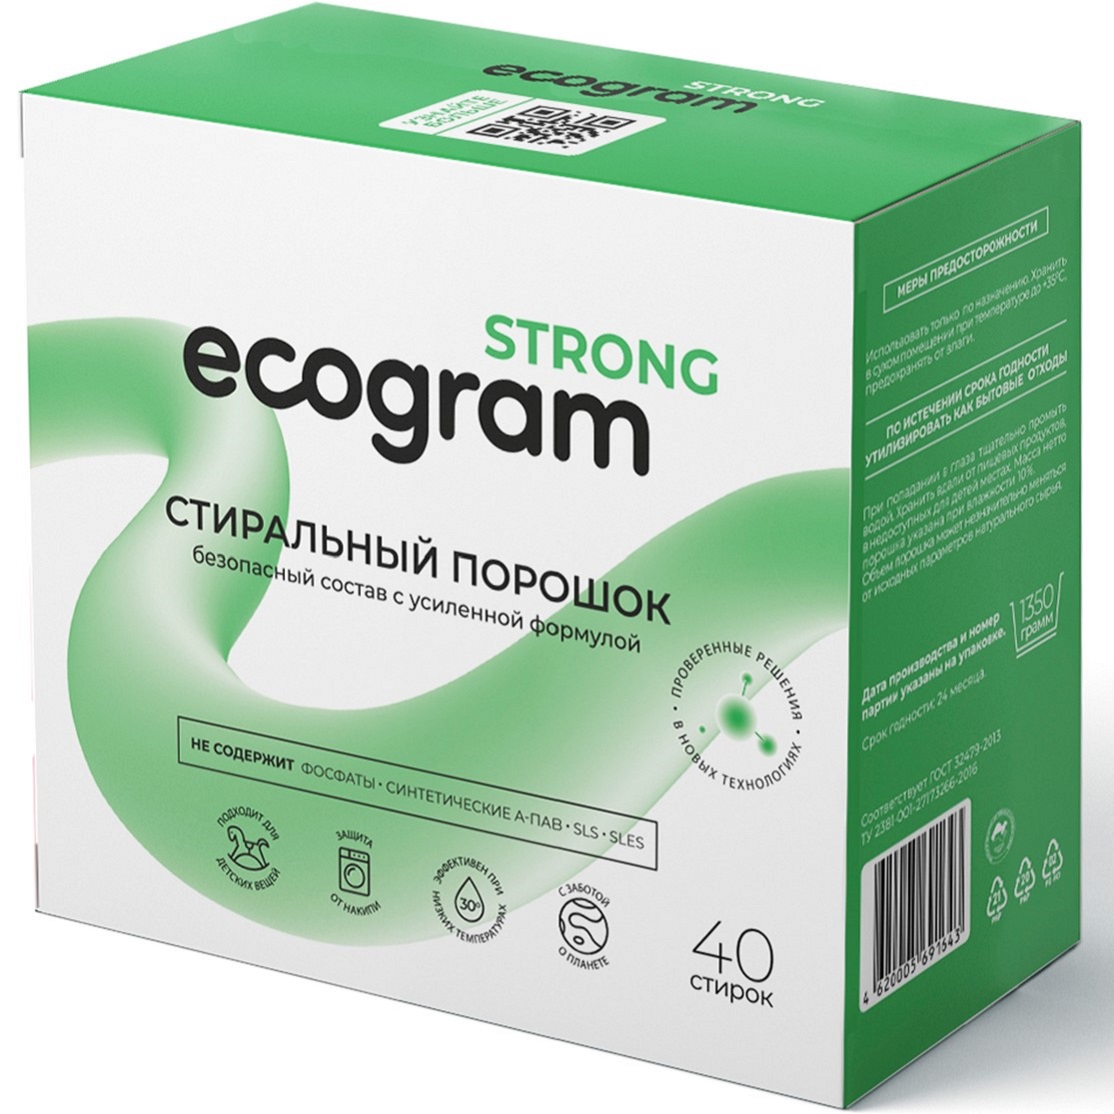 Стиральный порошок Ecogram Strong экологичный 1350 г - фото 1